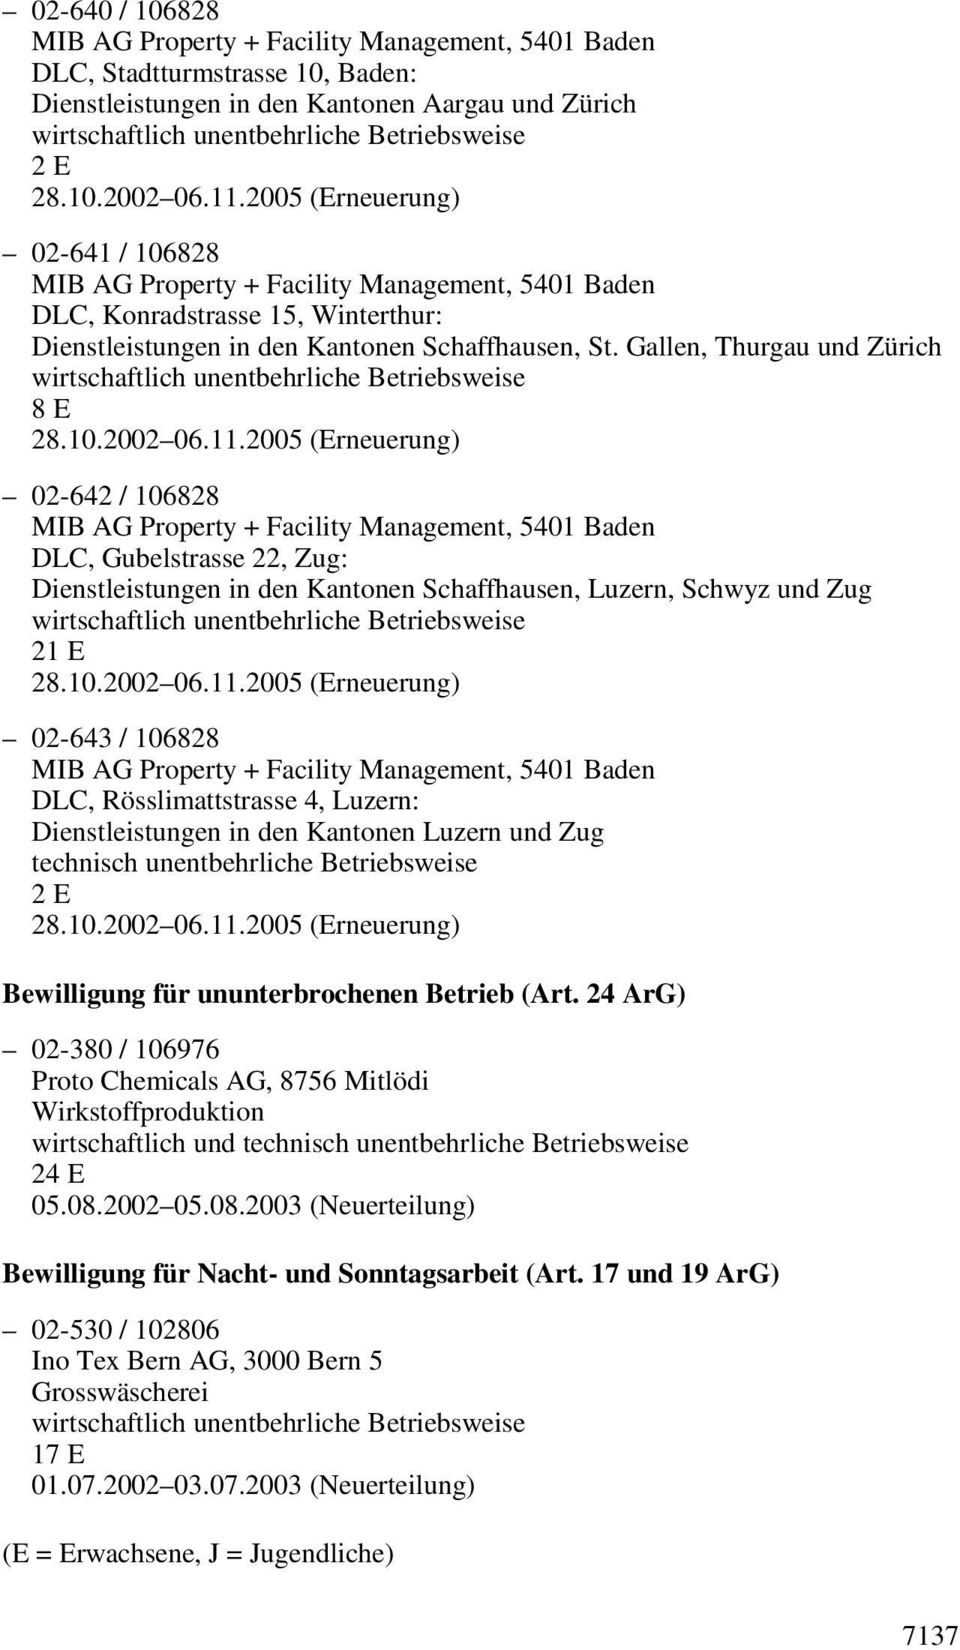 Luzern: Dienstleistungen in den Kantonen Luzern und Zug technisch unentbehrliche Betriebsweise Bewilligung für ununterbrochenen Betrieb (Art.